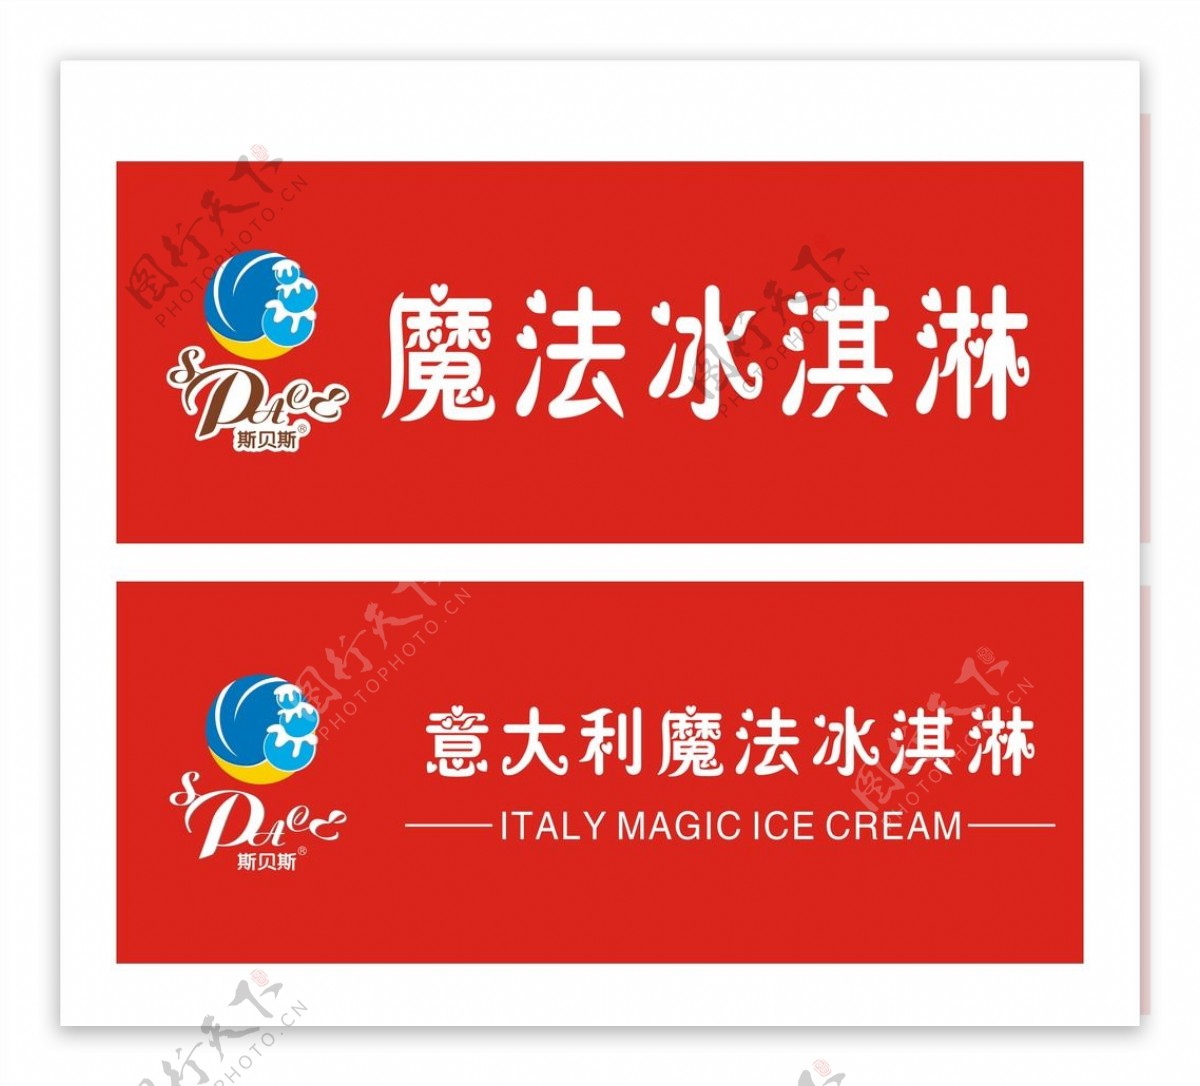 意大利魔法冰淇凌